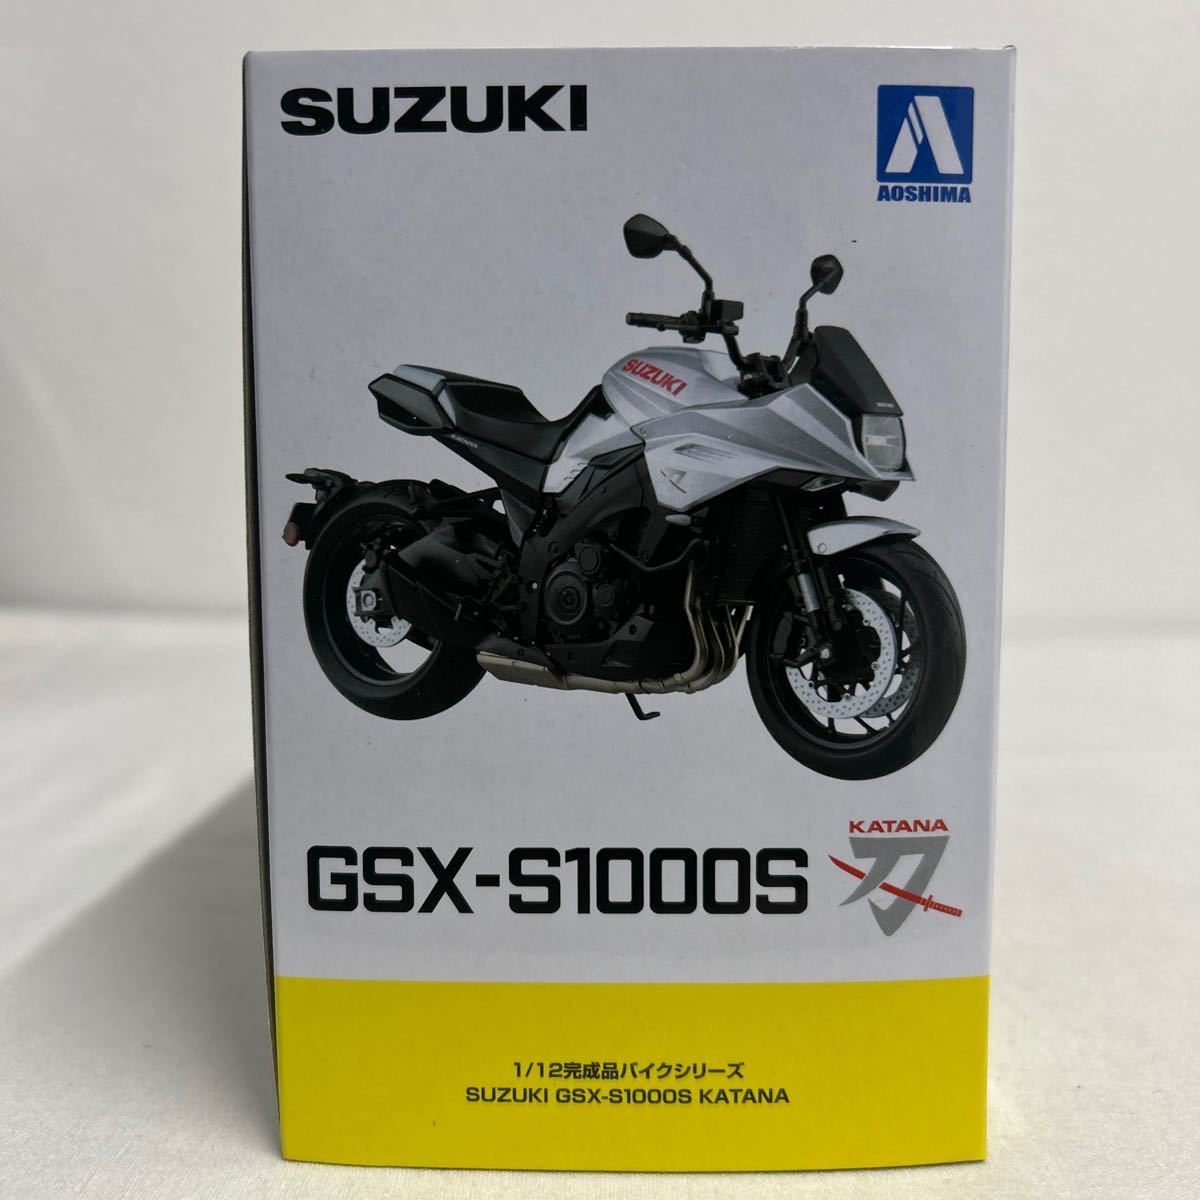 アオシマ 1/12 SUZUKI GSX-S1000S KATANA グラススパークルブラック スズキ カタナ 刀 完成品バイクシリーズ ミニカー モデルカー_画像5